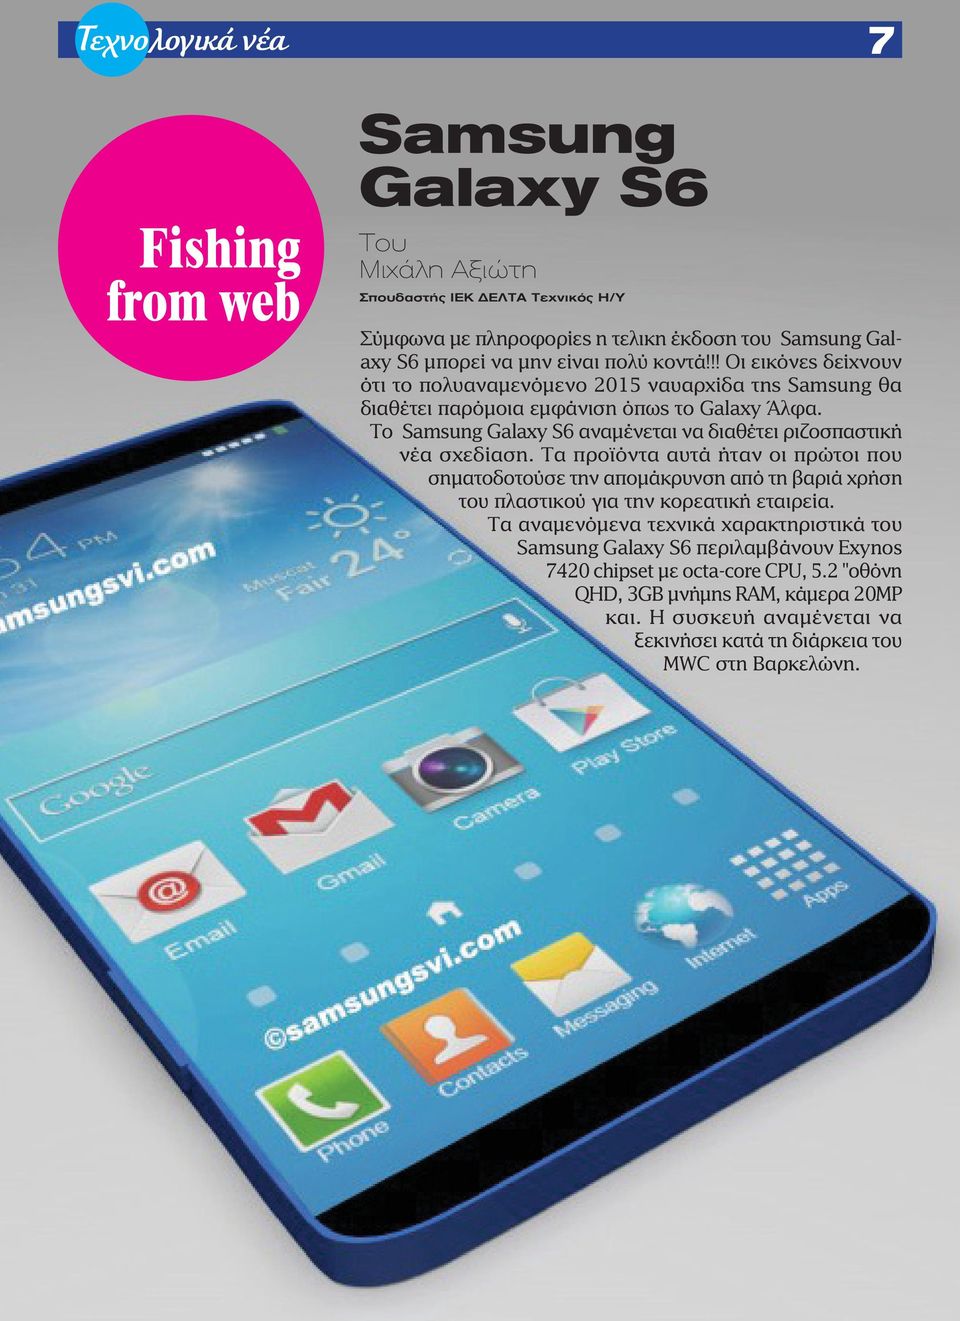 Το Samsung Galaxy S6 αναμένεται να διαθέτει ριζοσπαστική νέα σχεδίαση.